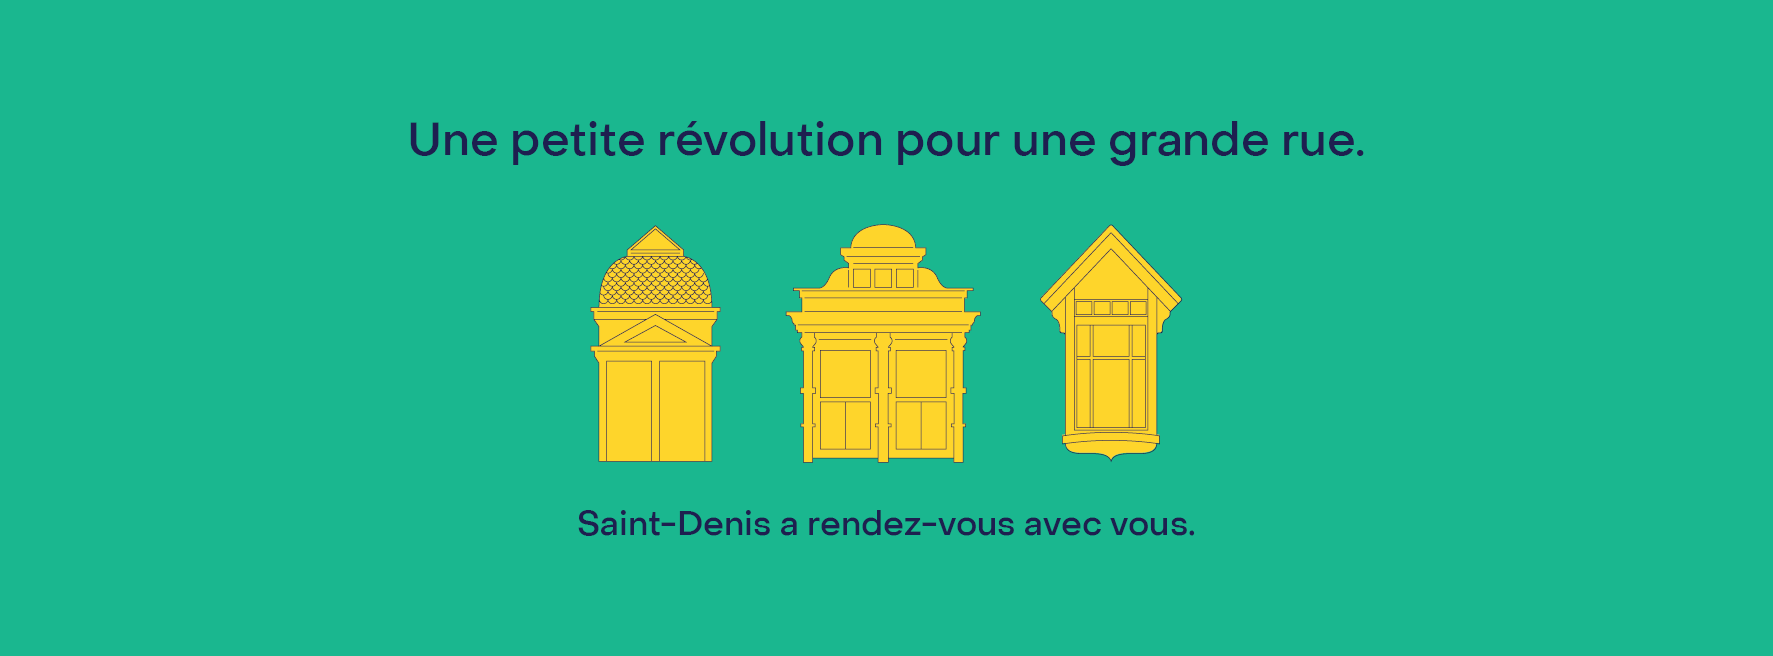 Bilan de mi-parcours du Plan de relance de la rue Saint-Denis - Une relance qui prend forme avec de nouveaux commerçants et une augmentation de l'achalandage sur Saint-Denis